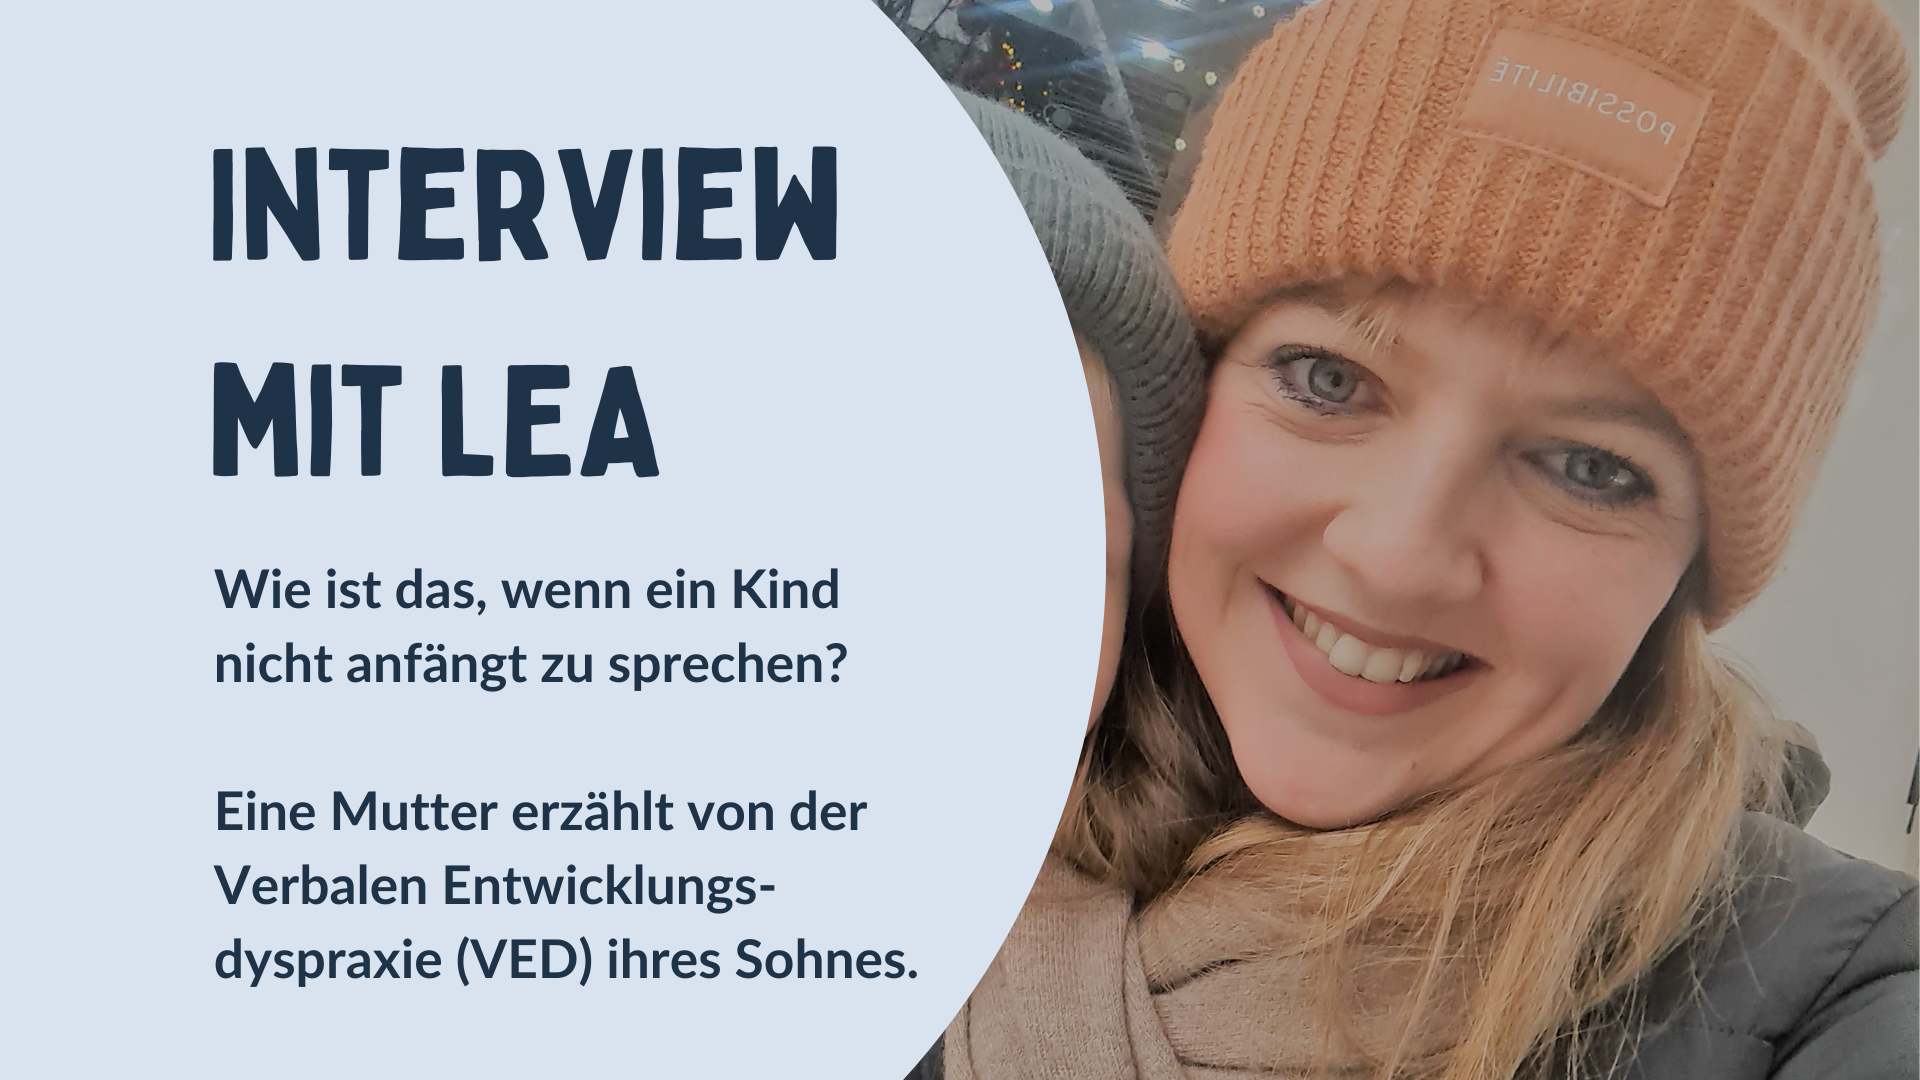 Interview mit Lea: Erfahrungen Kind mit Verbaler Entwicklungsdyspraxie (VED)